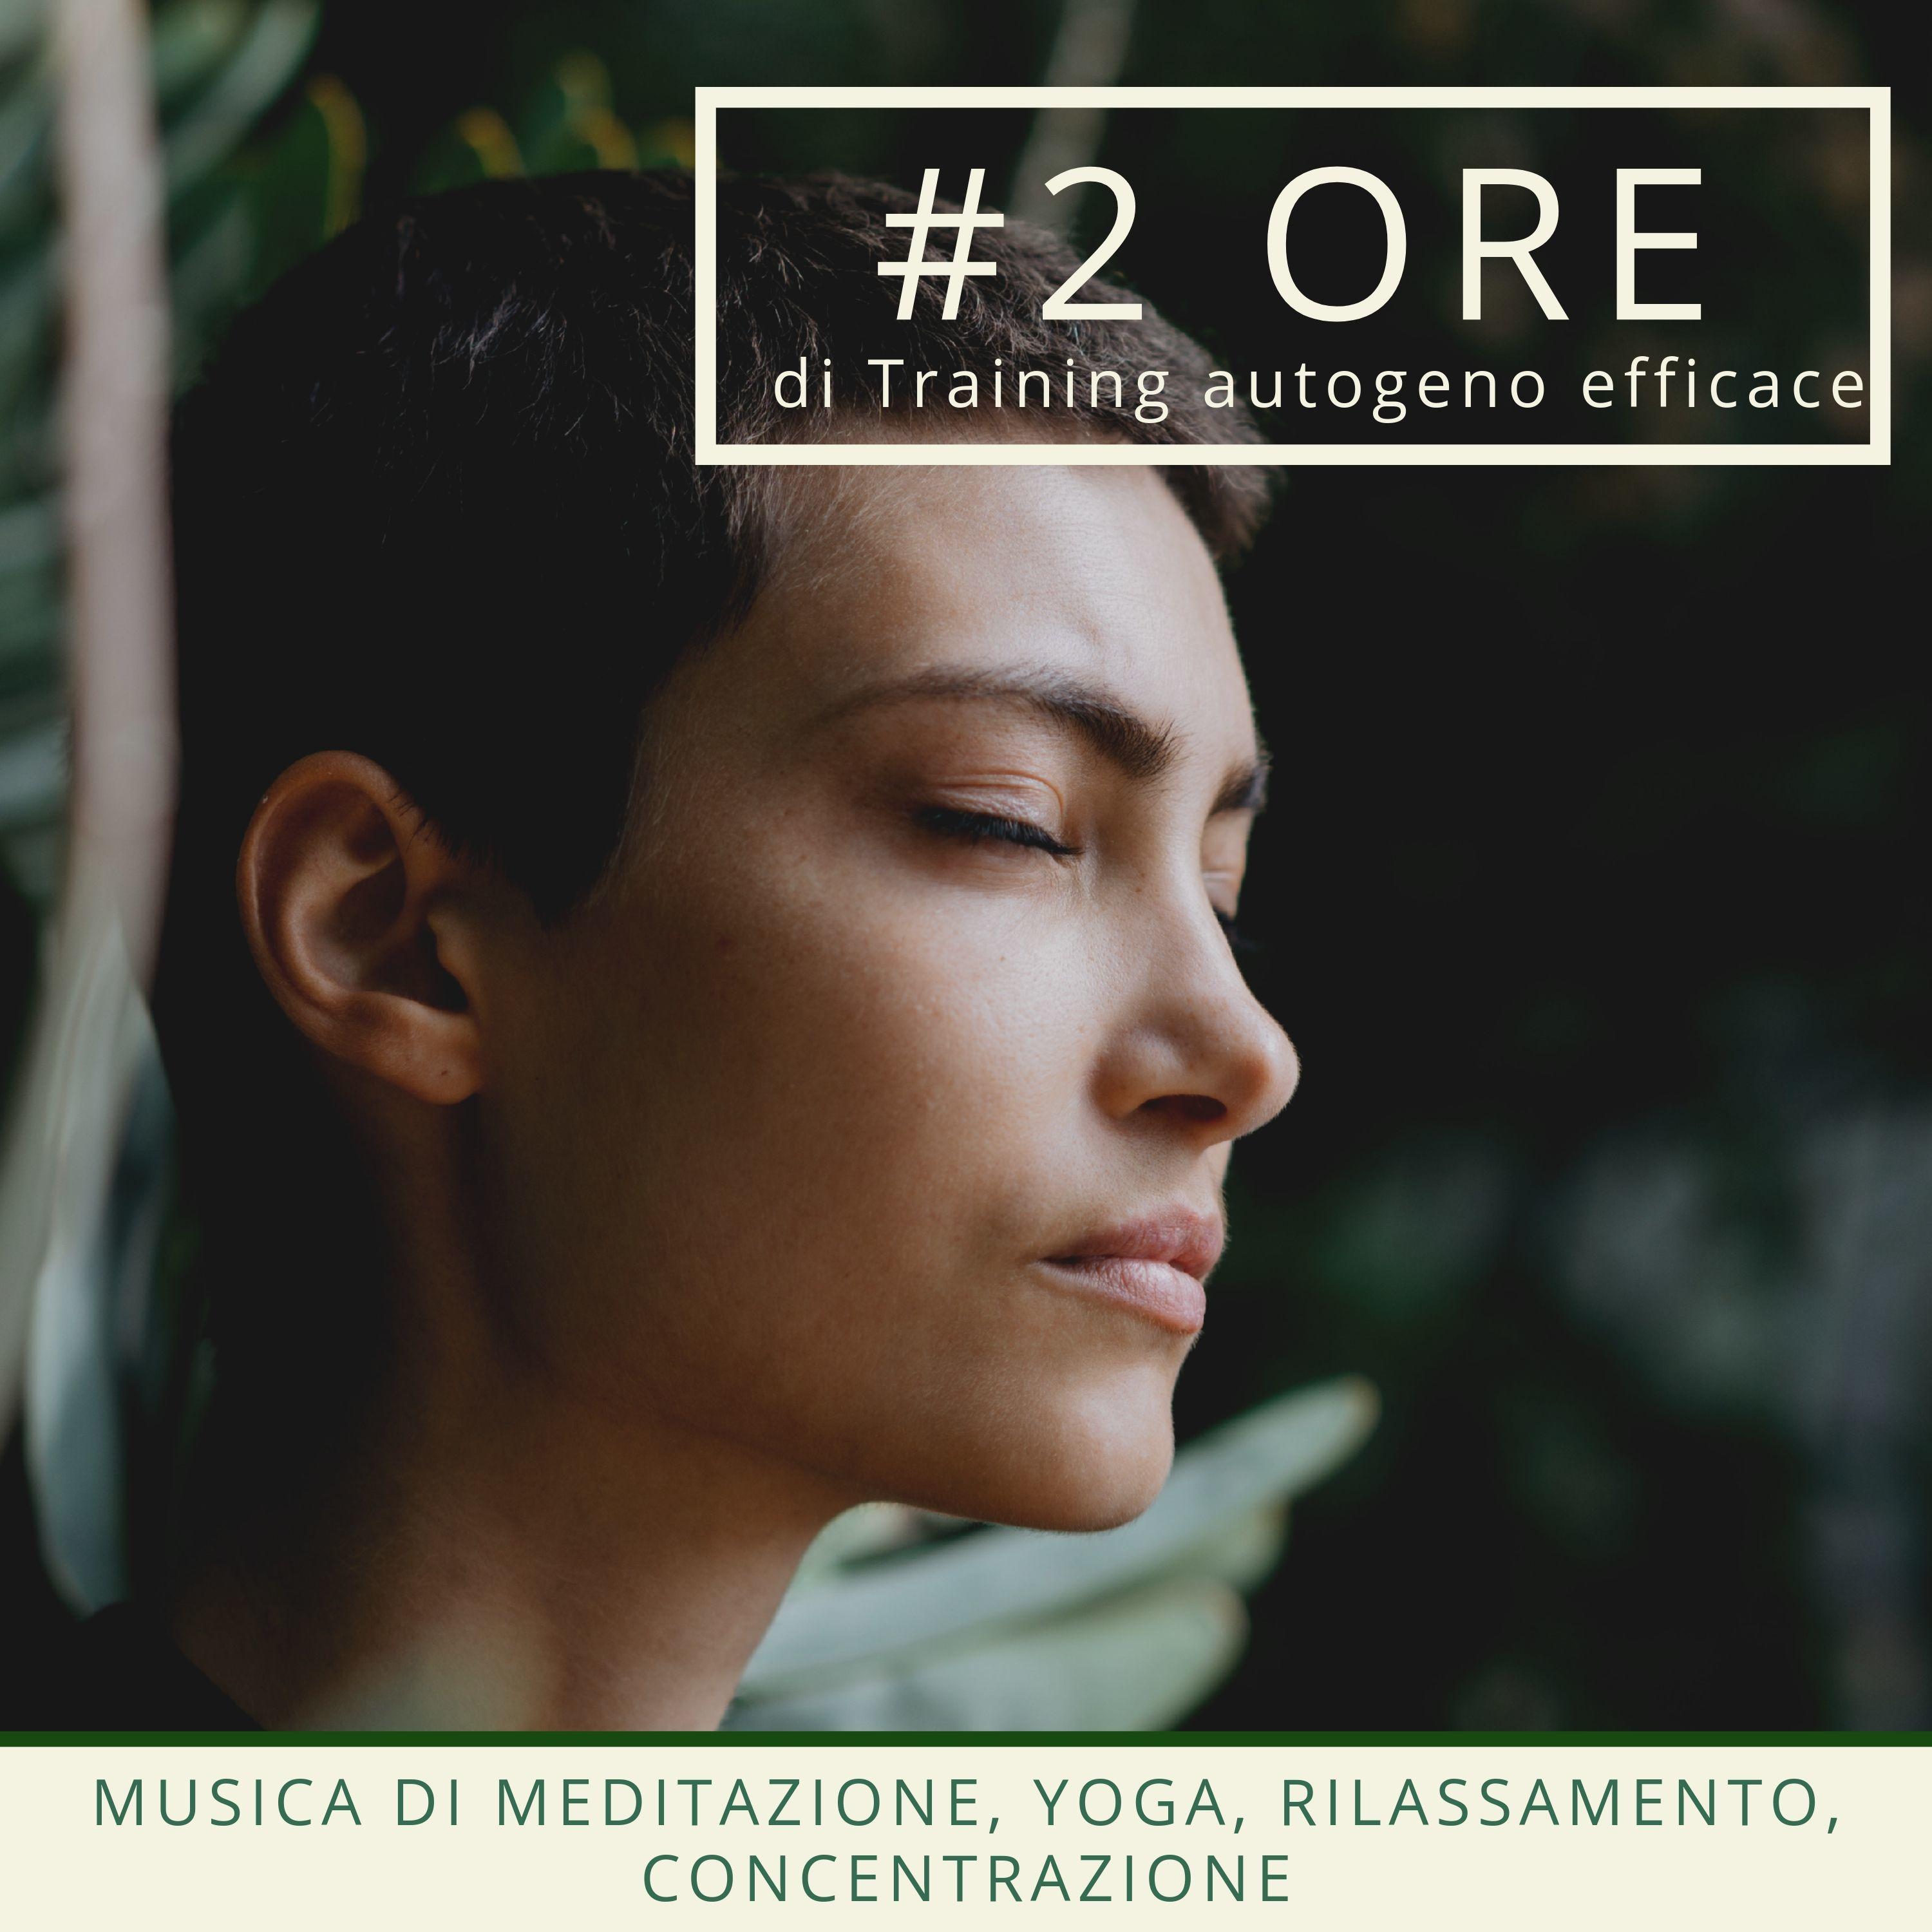 #2 ORE di Training autogeno efficace: musica di meditazione, yoga, rilassamento, concentrazione